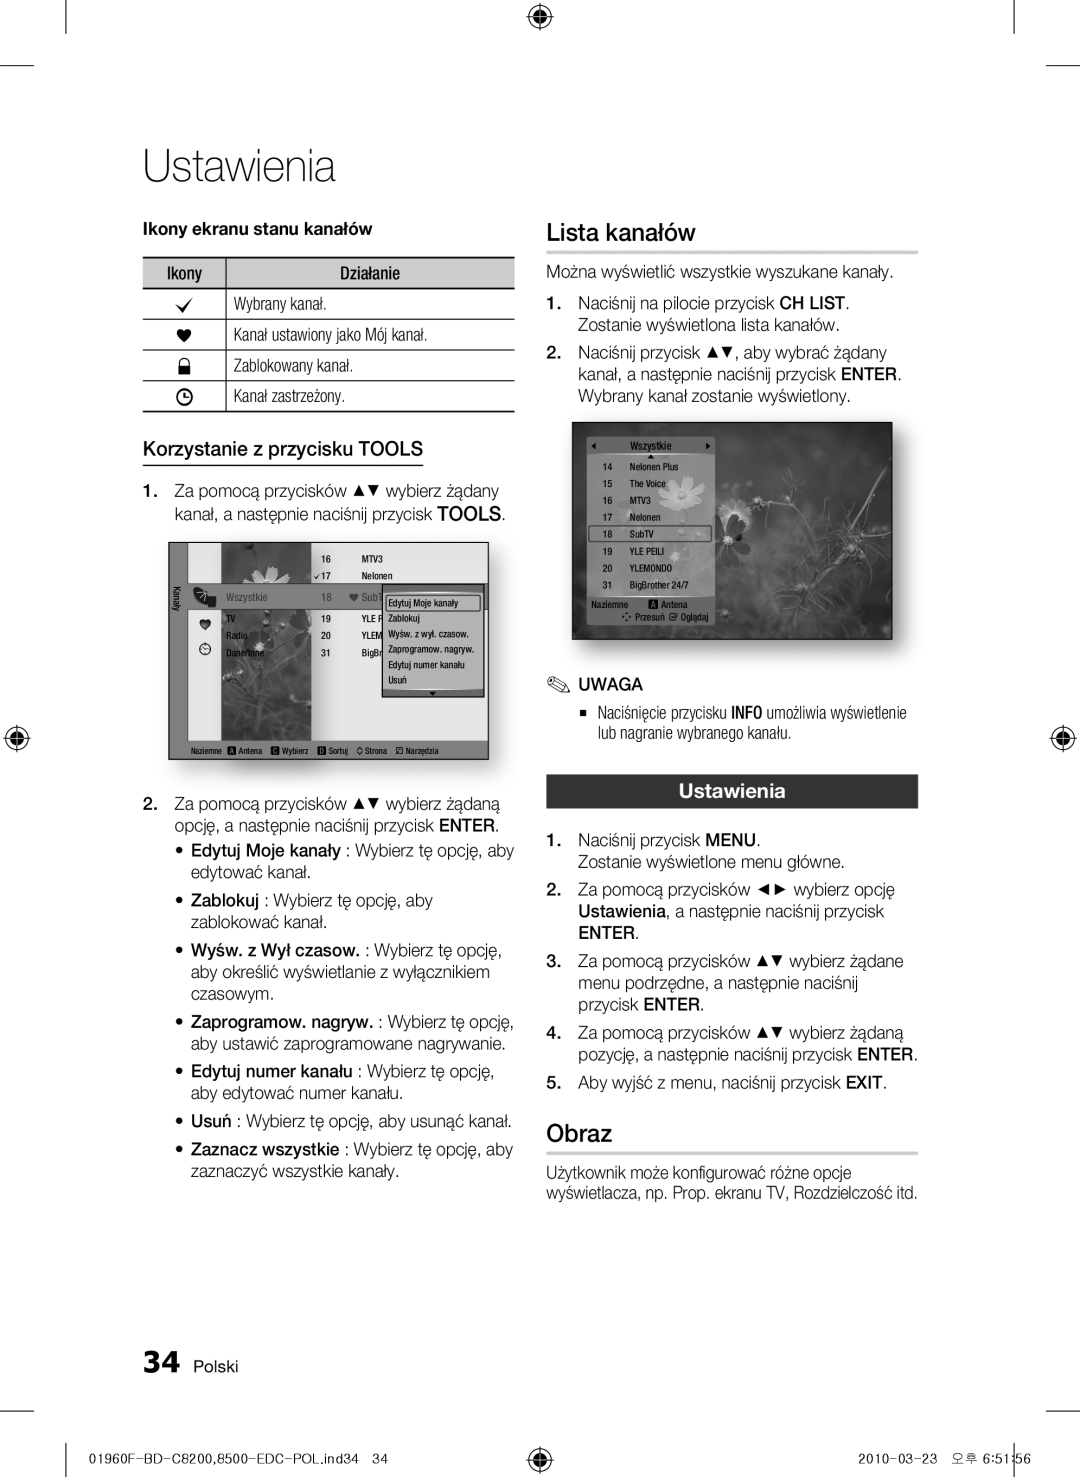 Samsung BD-C8500/XEN, BD-C8200/EDC, BD-C8500/EDC manual Lista kanałów, Obraz, Korzystanie z przycisku TOOLS, Ustawienia 